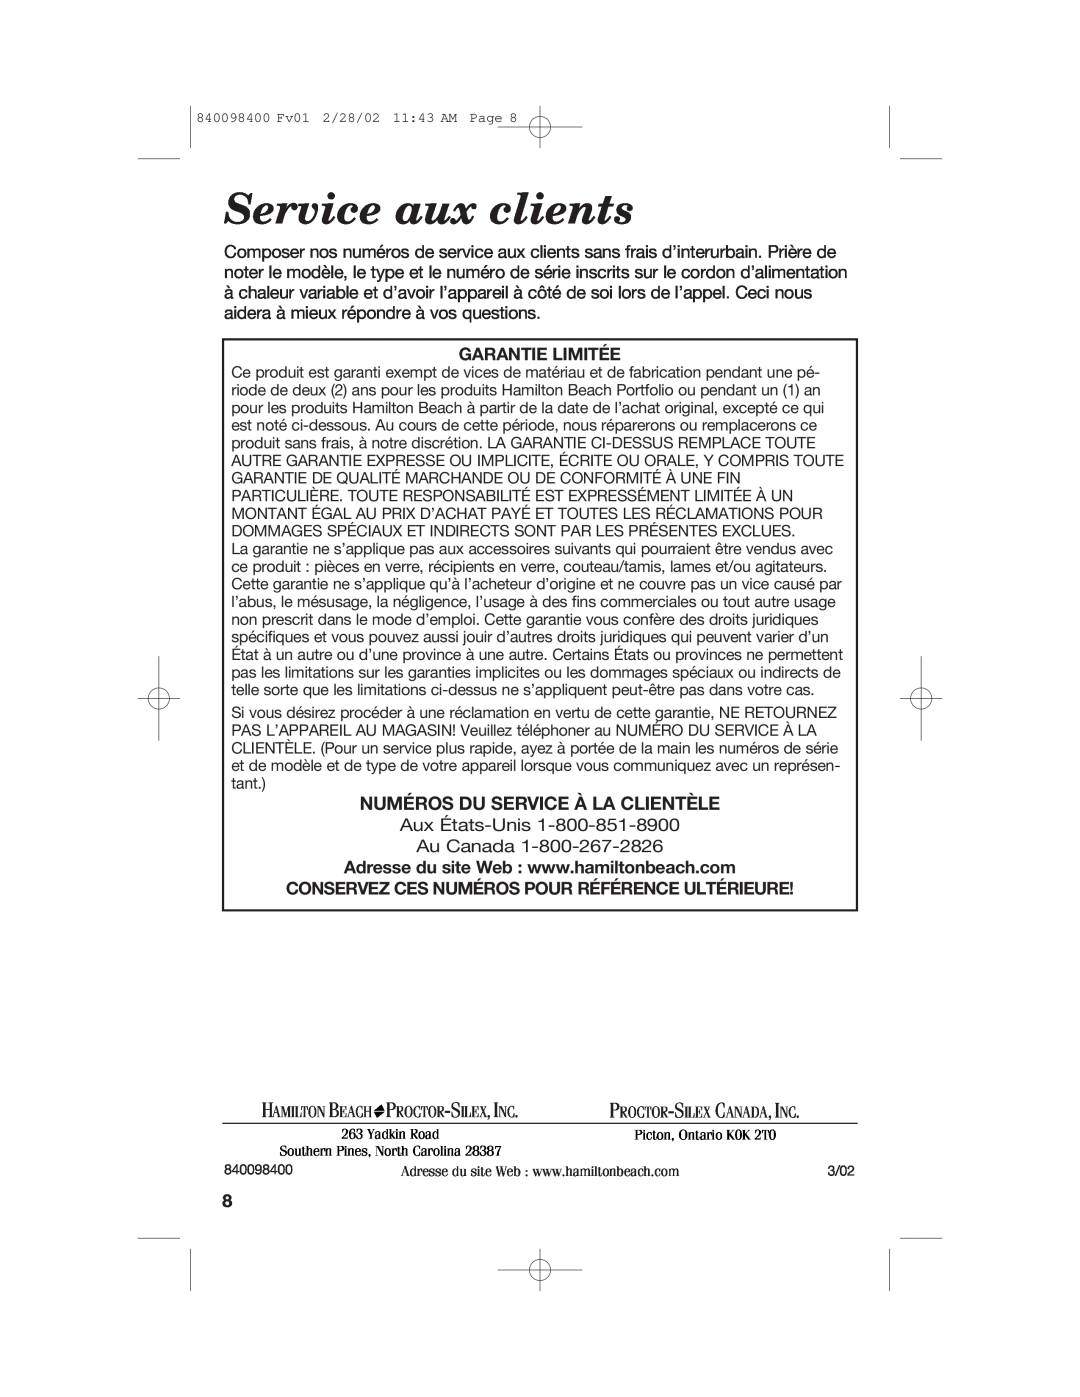 Hamilton Beach Electric Griddle manual Service aux clients, Numéros Du Service À La Clientèle, Garantie Limitée 